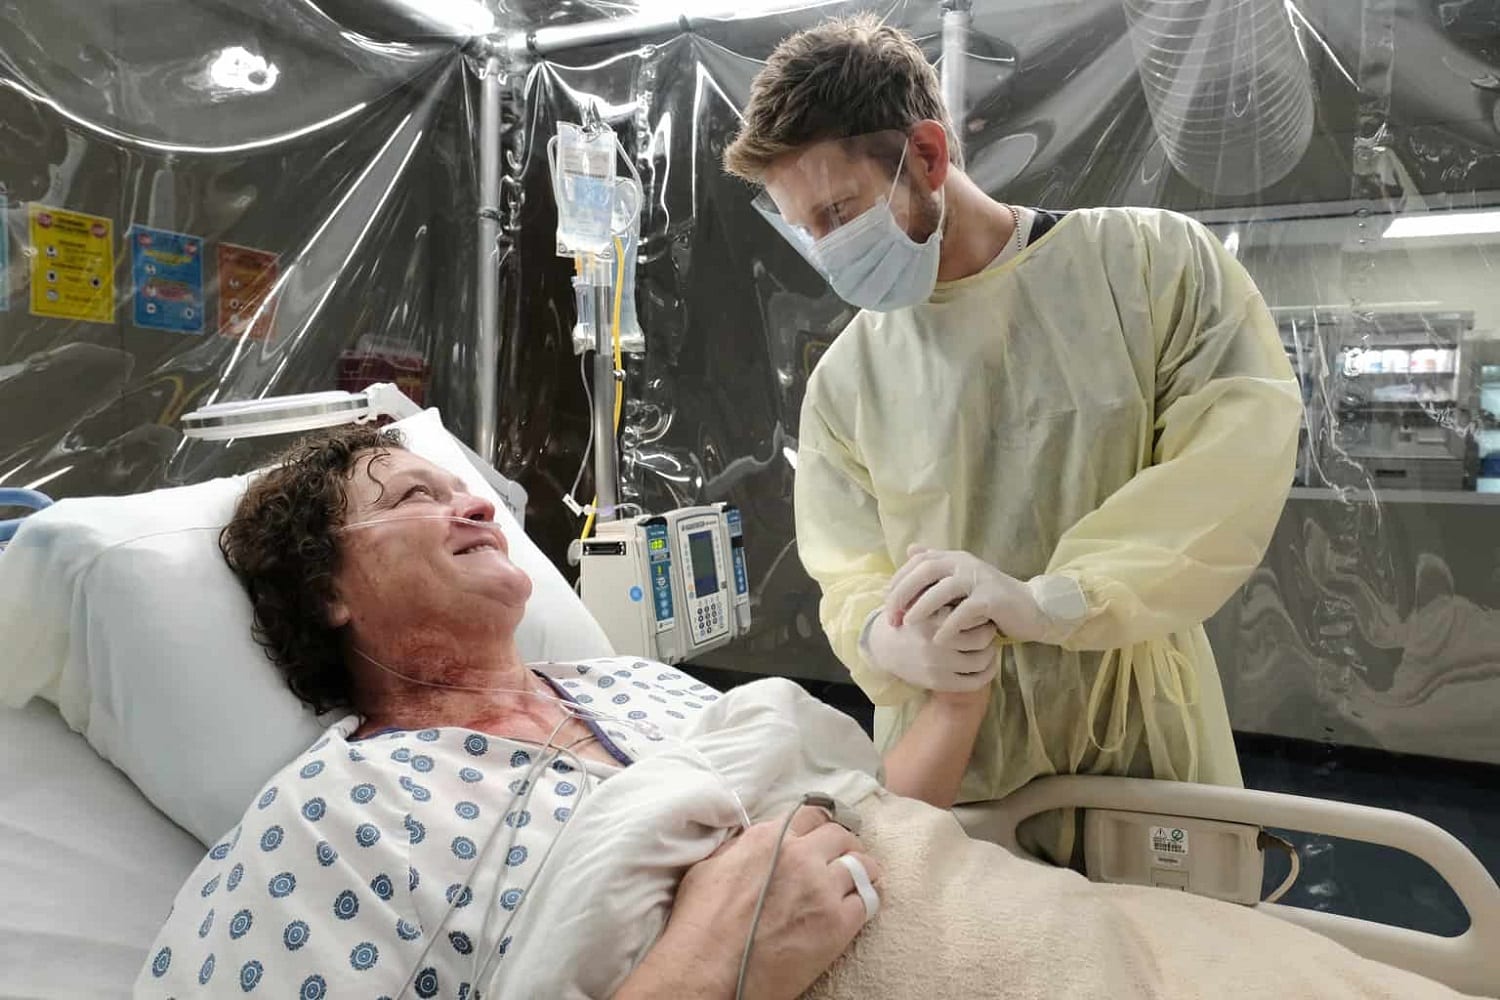 SerieTivu: The Resident 2 quinto appuntamento. Con protagonista Matt Czuchry nei panni del dottor Conrad Hawkins, in prima tv su RaiDue